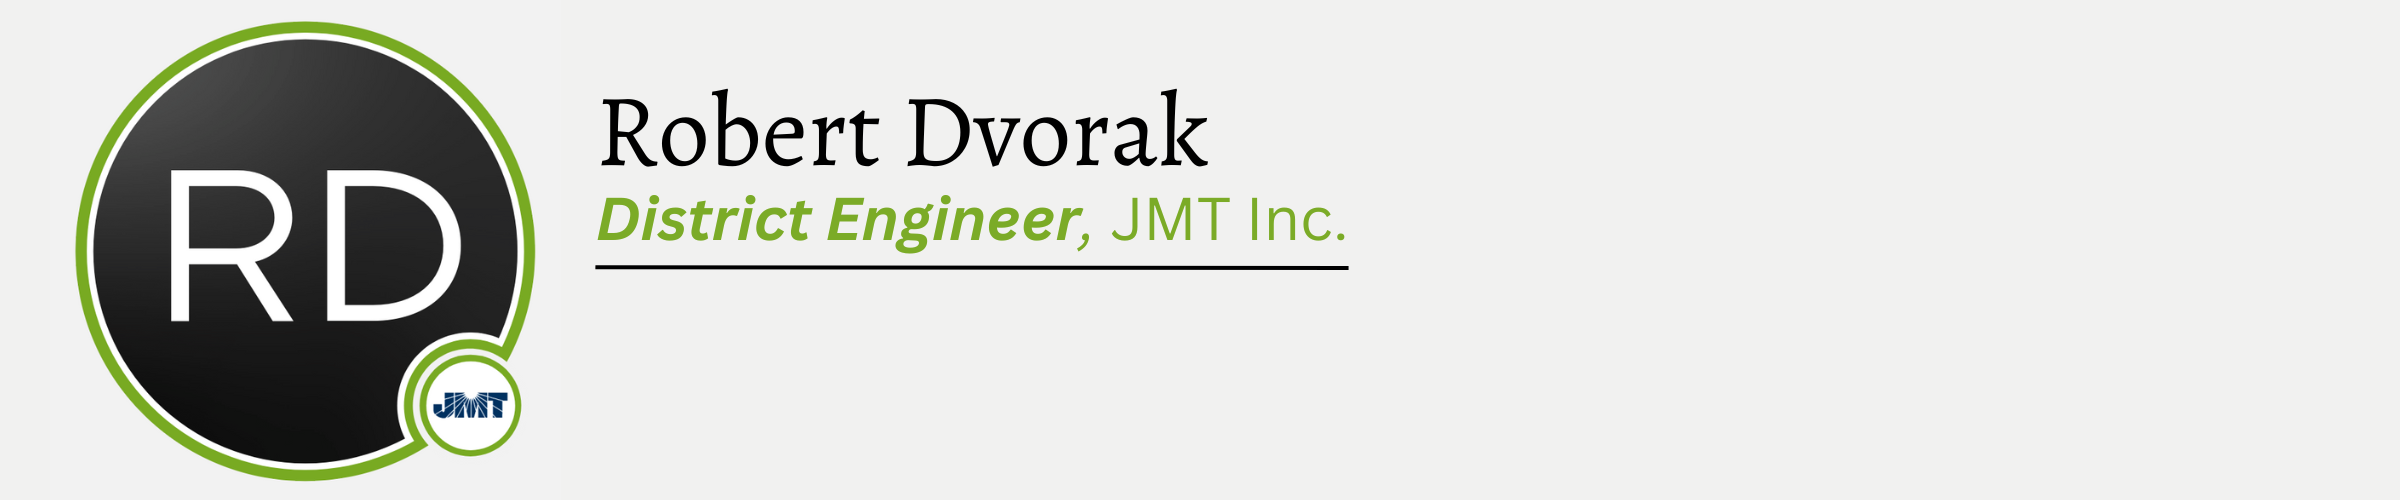 Robert Dvorak. District Engineer, JMT Incorporated.